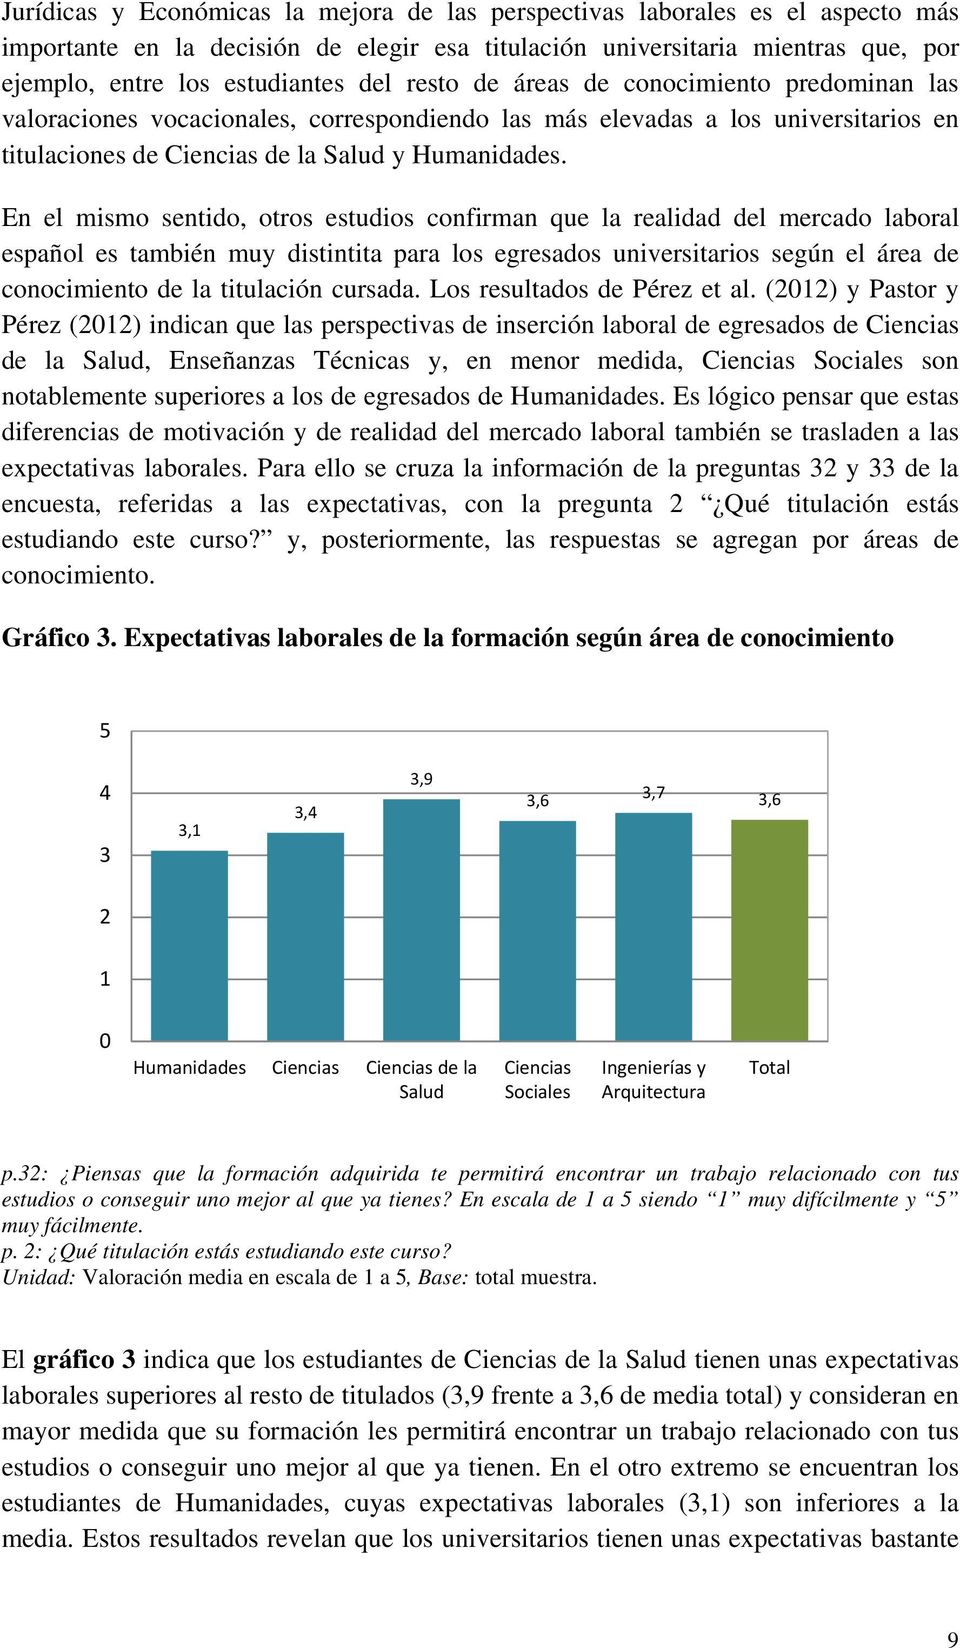 En el mismo sentido, otros estudios confirman que la realidad del mercado laboral español es también muy distintita para los egresados universitarios según el área de conocimiento de la titulación